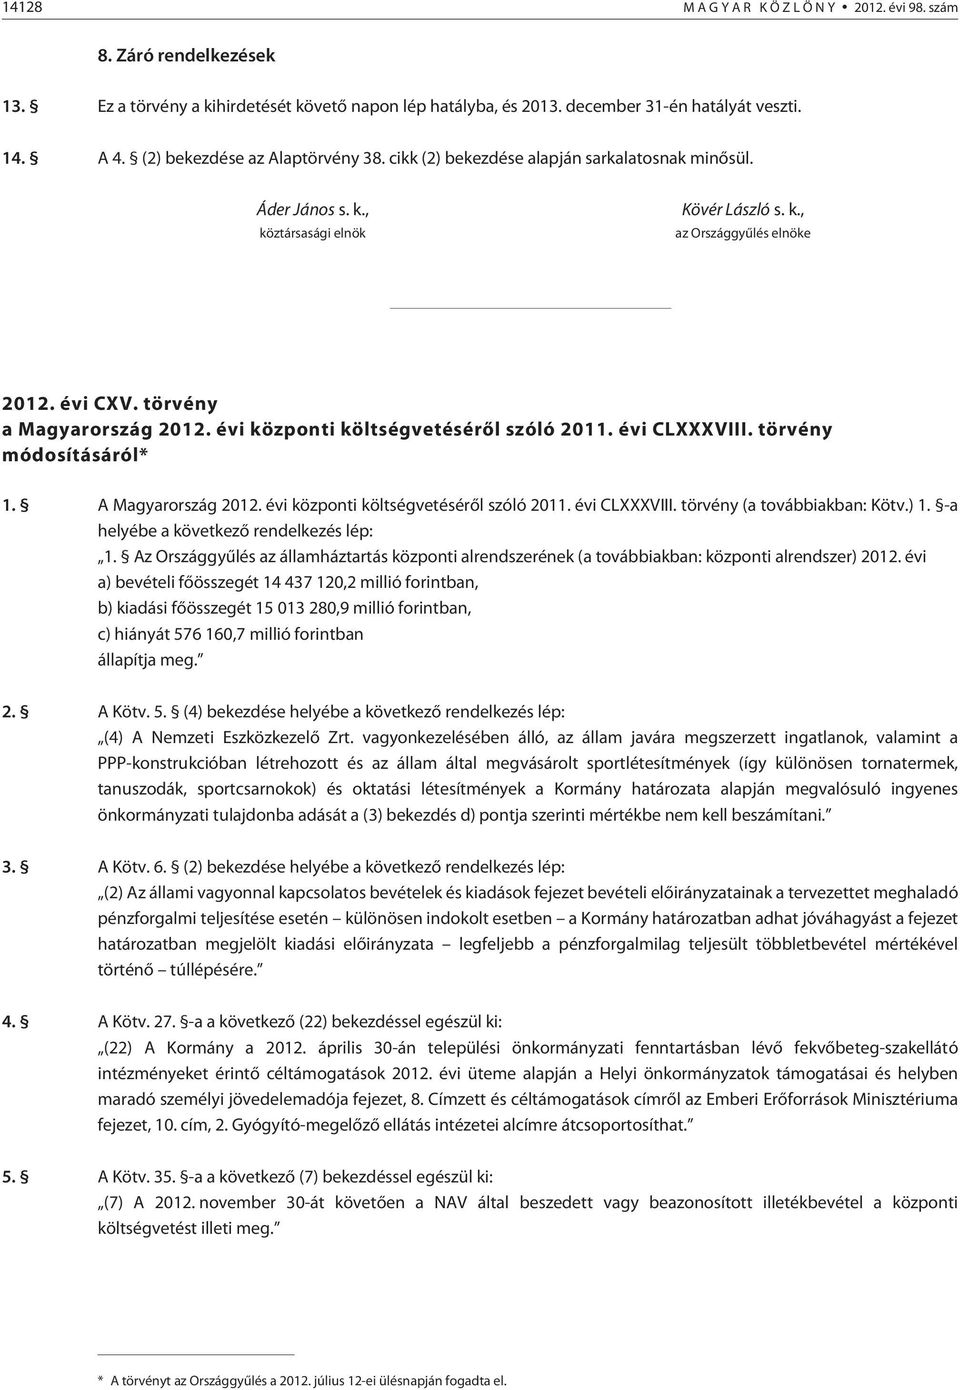 törvény a Magyarország 2012. évi központi költségvetésérõl szóló 2011. évi CLXXXVIII. törvény módosításáról* 1. A Magyarország 2012. évi központi költségvetésérõl szóló 2011. évi CLXXXVIII. törvény (a továbbiakban: Kötv.